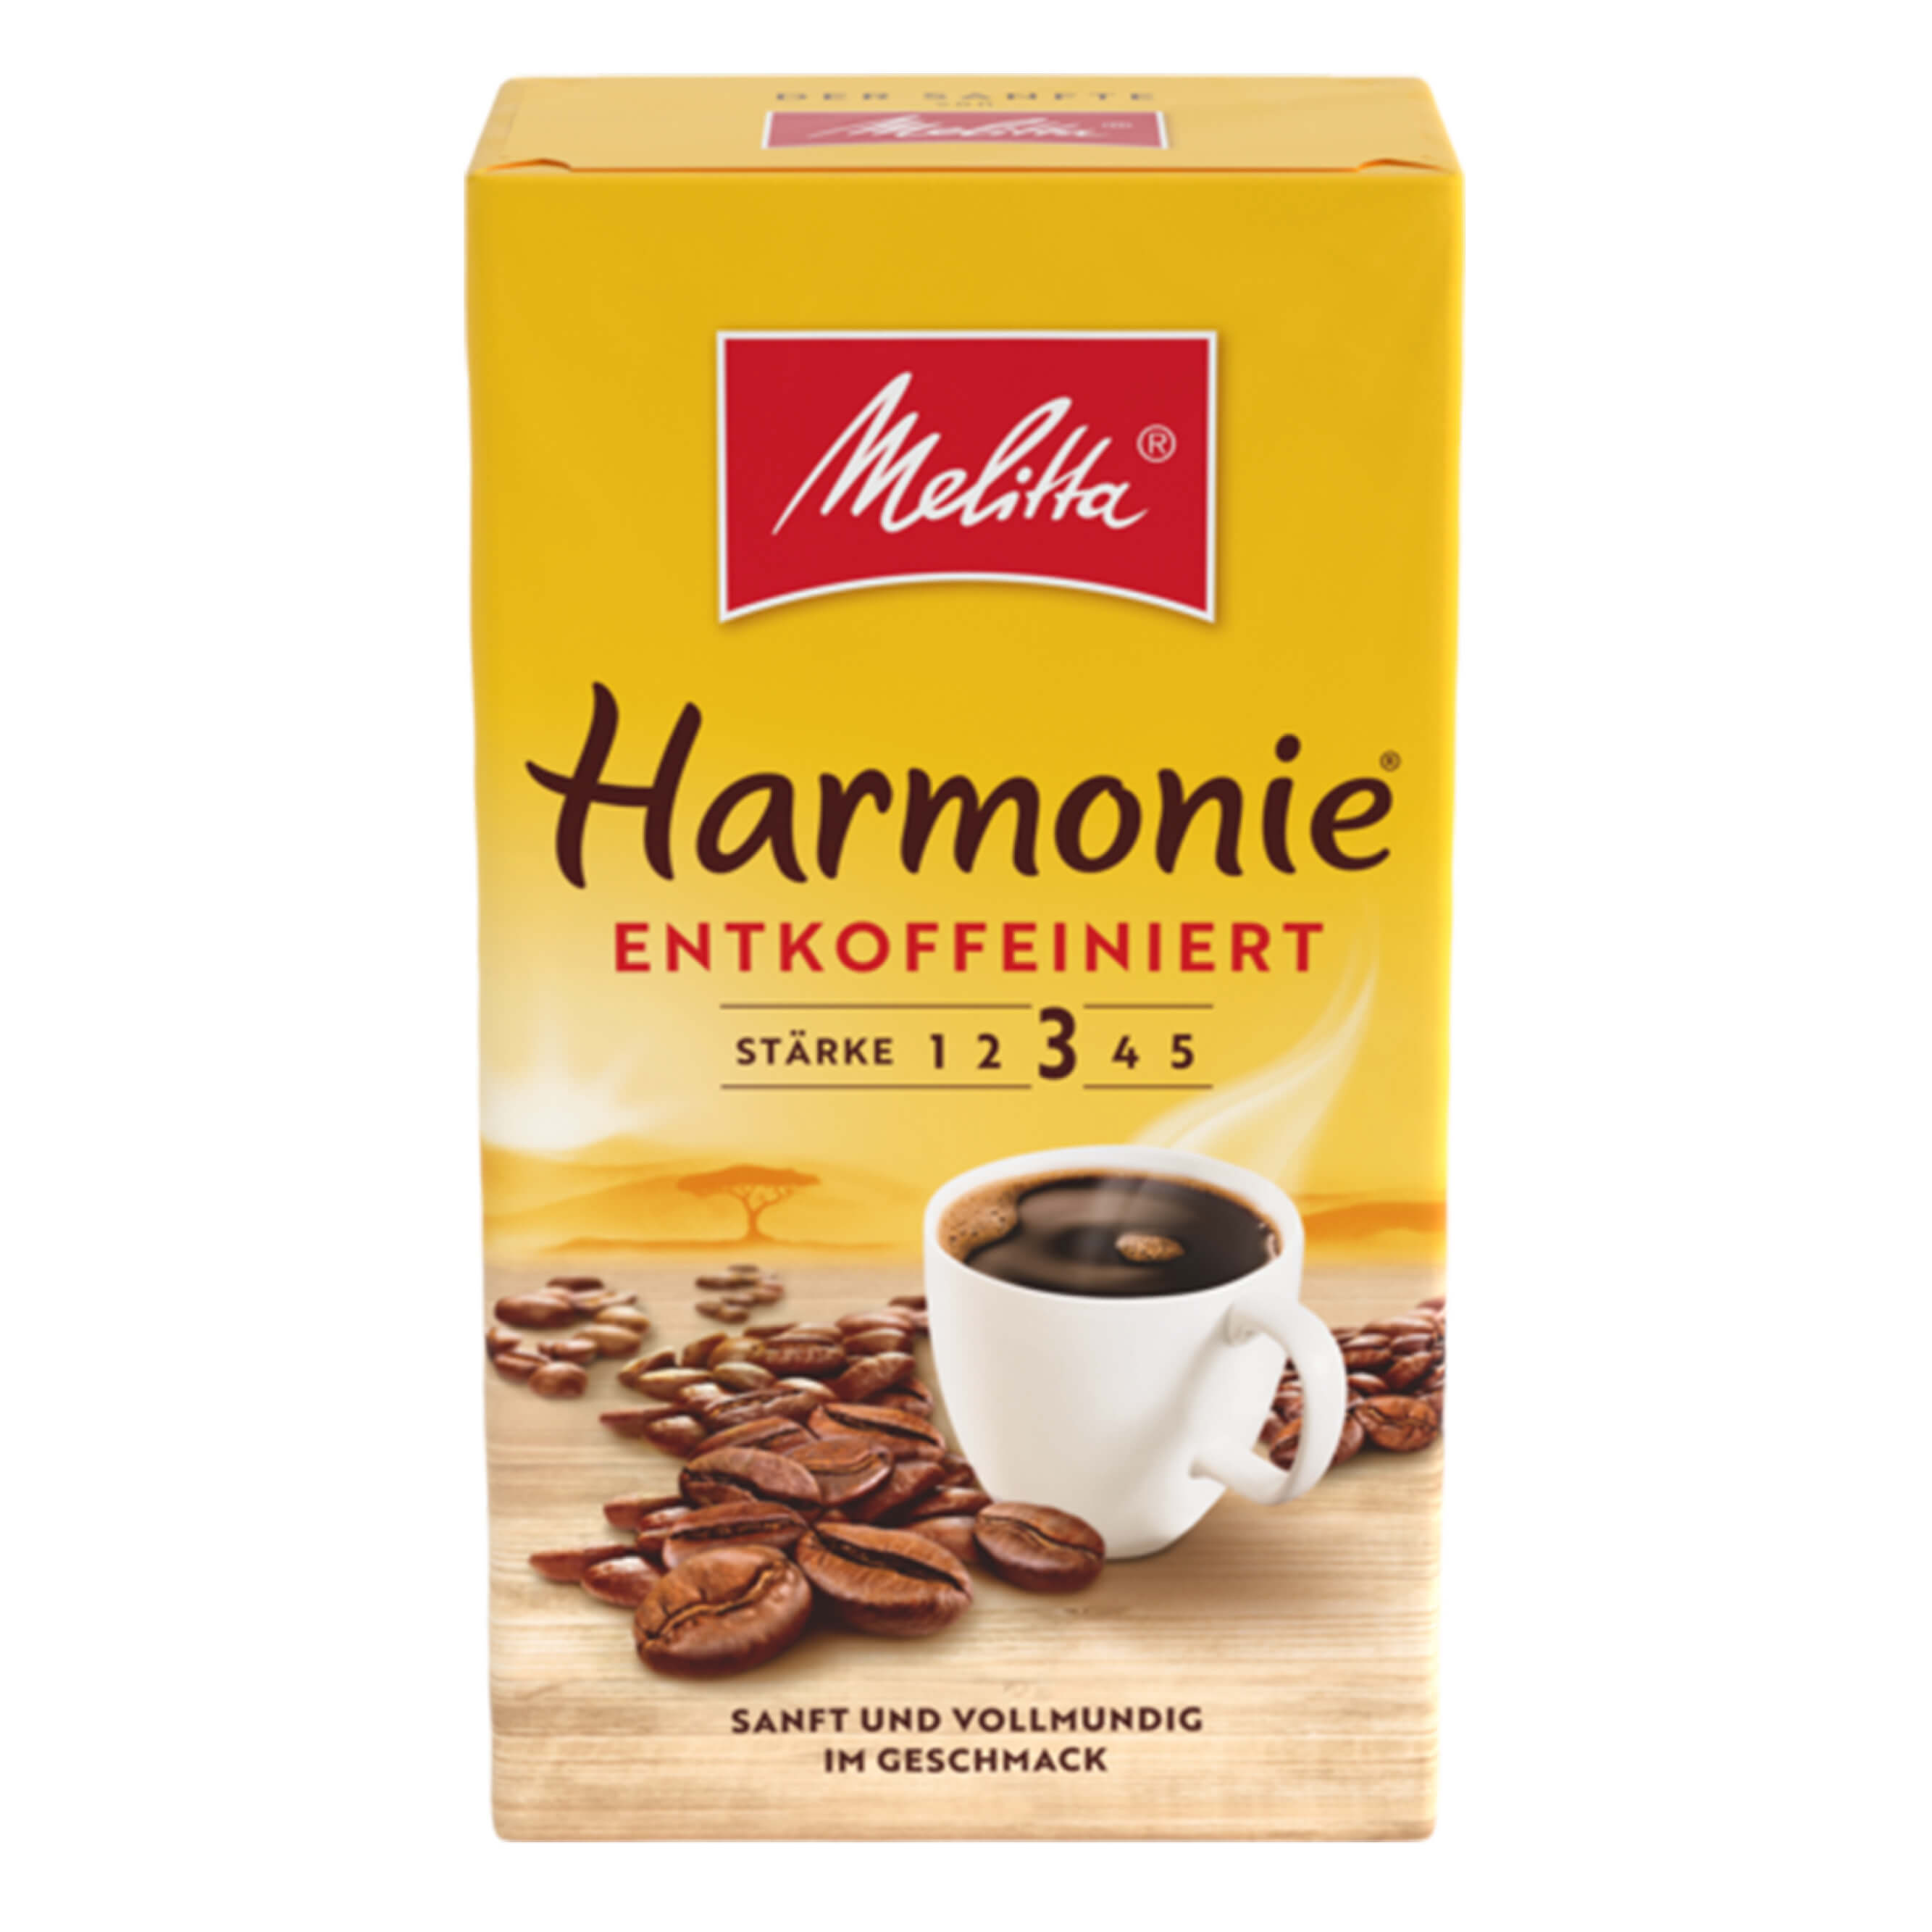 Melitta Harmonie mild entkoffeiniert 500g